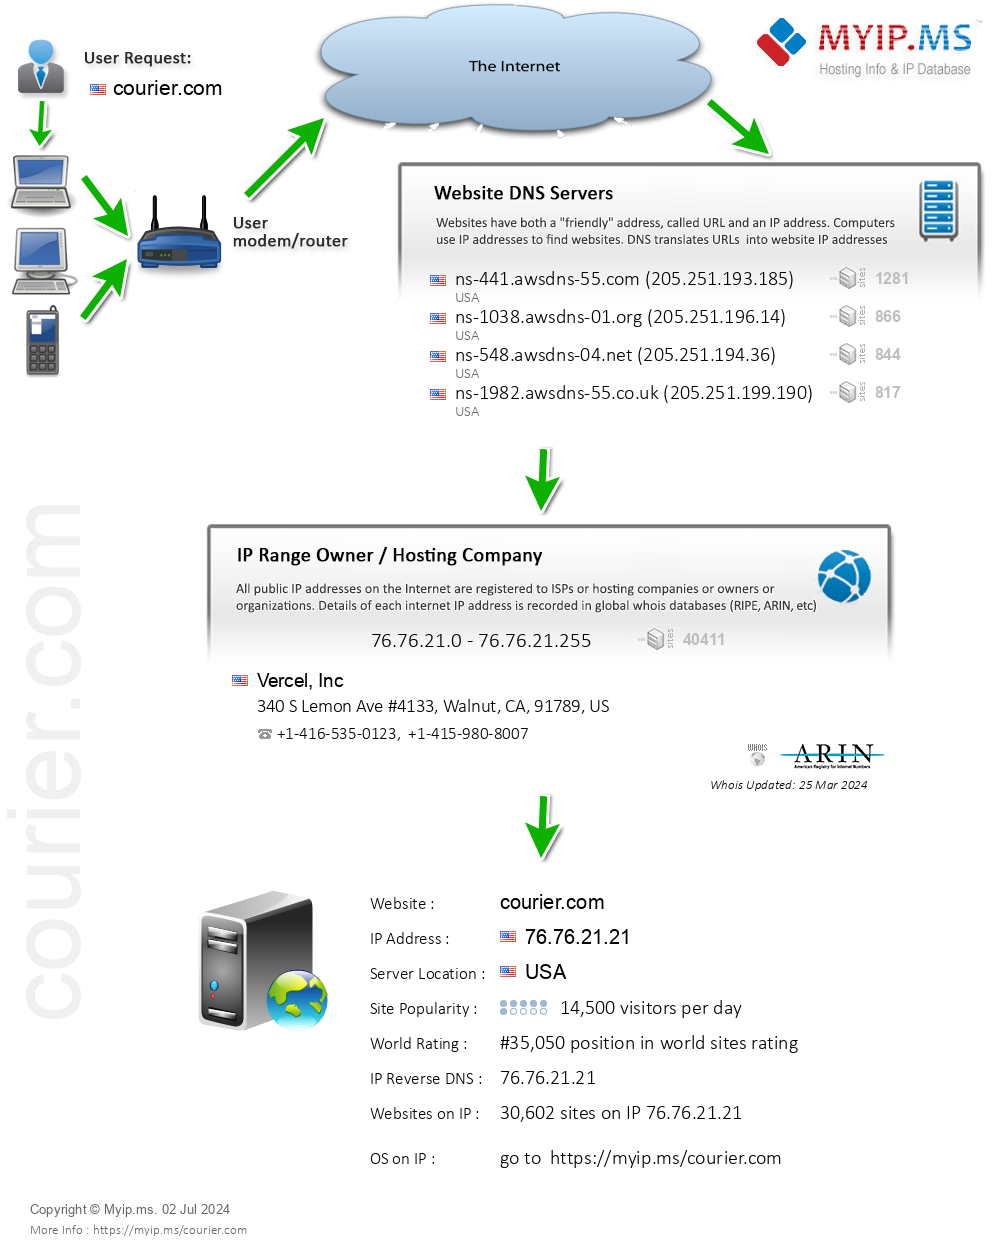 Courier.com - Website Hosting Visual IP Diagram